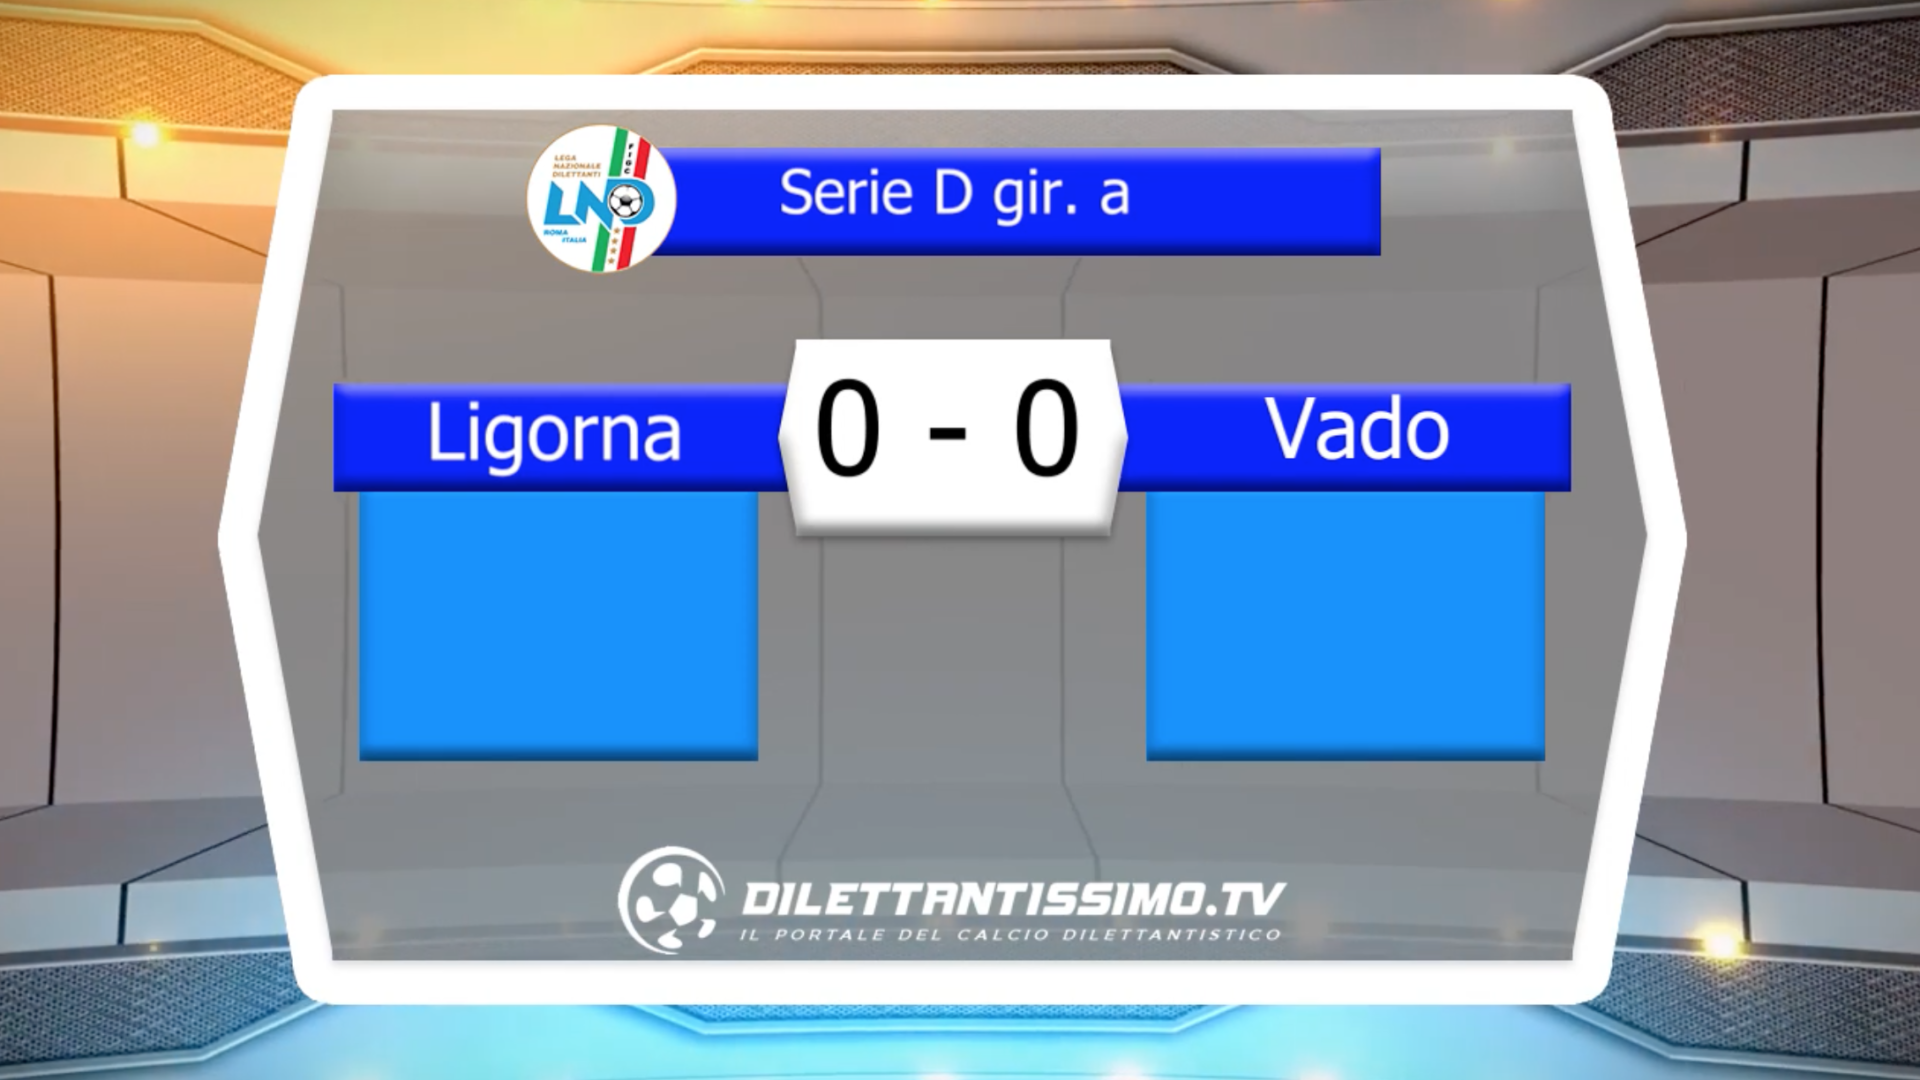 VIDEO – LIGORNA-VADO 0-0: le immagini del match